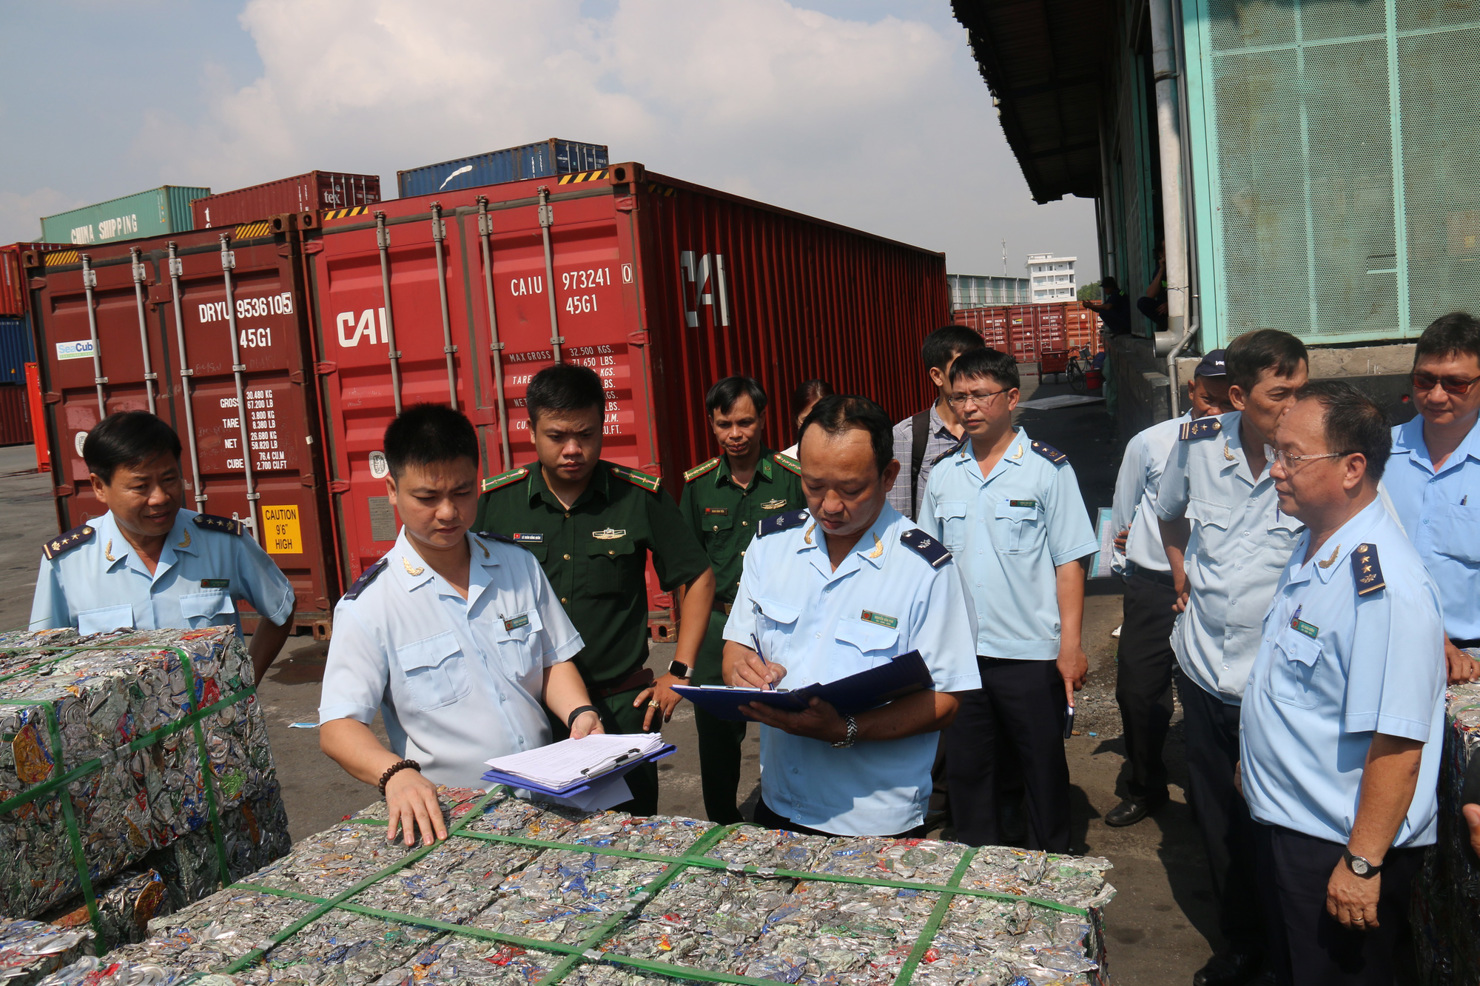 Cơ quan hải quan quản lý phế liệu tồn đọng thực hiện lập Biên bản bàn giao các container phế liệu kèm niêm phong của hãng vận tải/niêm phong hải quan đưa đi tiêu hủy.